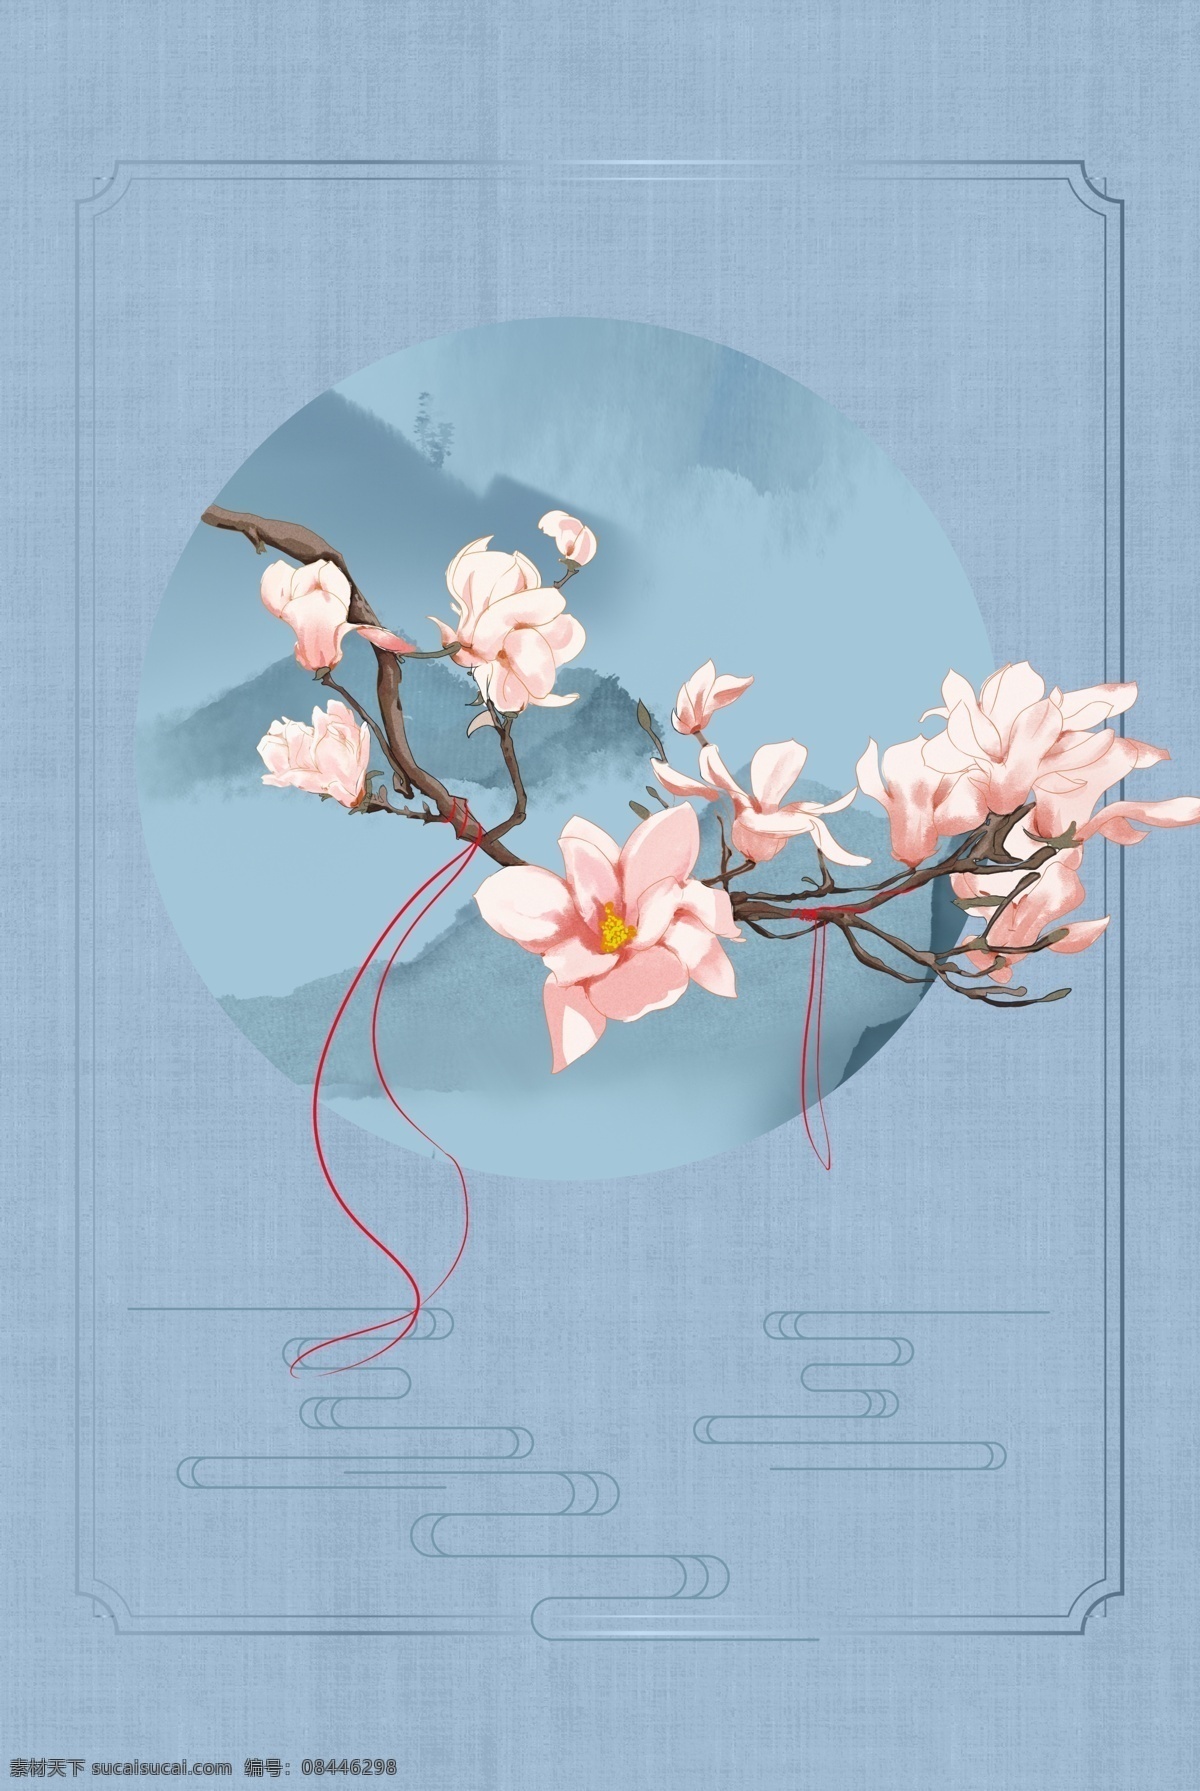 古典 中国 风 花卉 工笔画 古风 中式 海报 花朵 海报背景模板 传统海报 中式海报背景 中国风